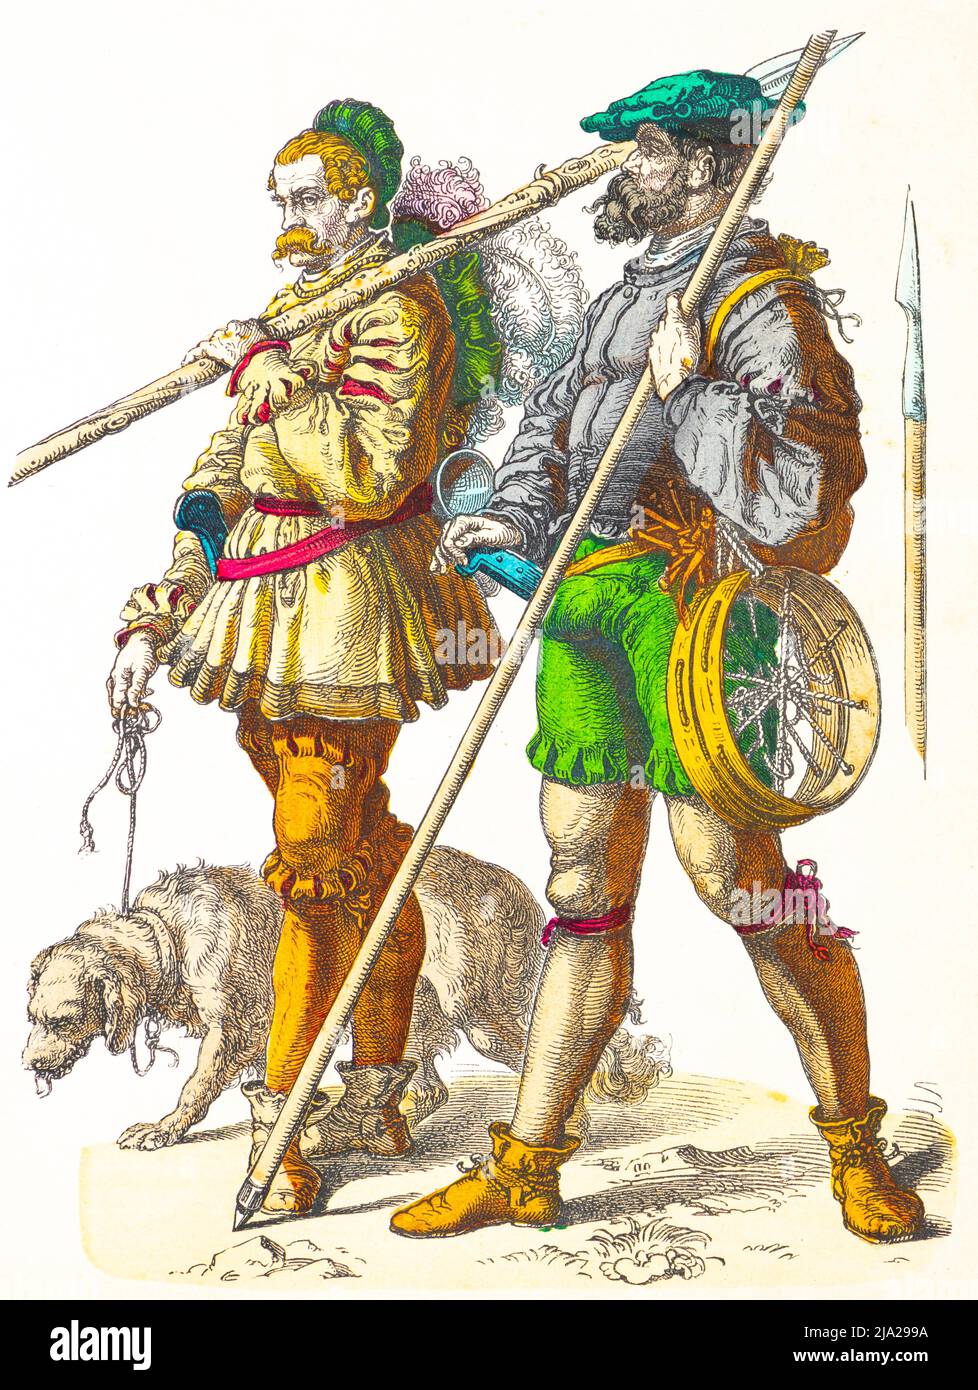 Fiche de Munich, costumes, début du 16th siècle, chasseurs de montagne, Allemagne, deux hommes, costume traditionnel, lance, chien, deux personnes, portrait Banque D'Images